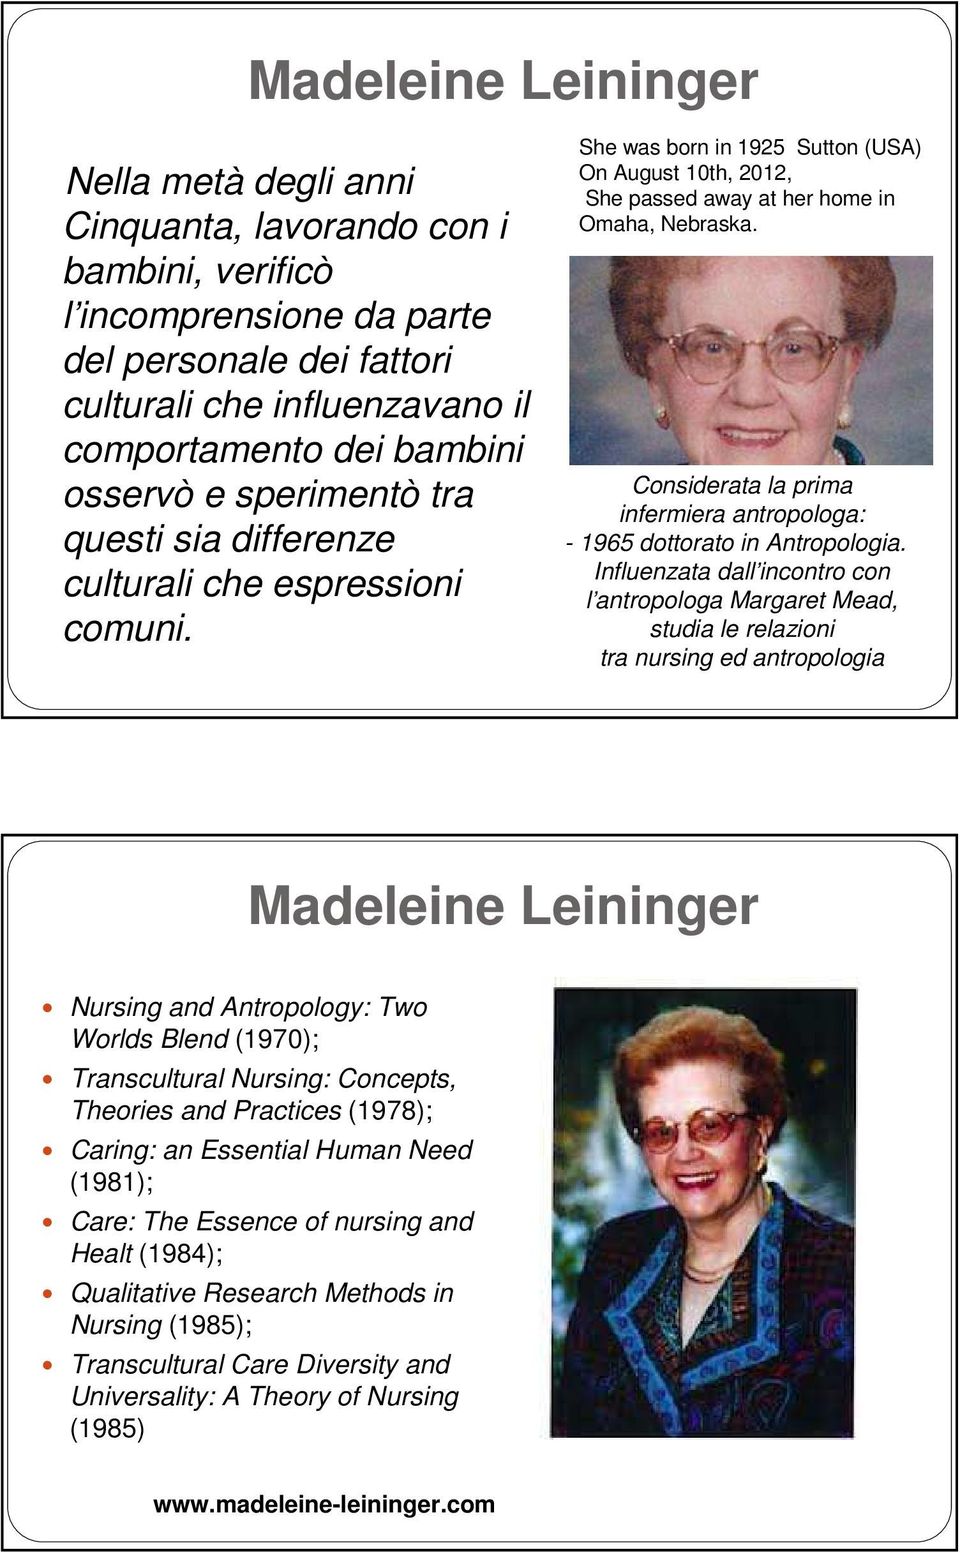 Considerata la prima infermiera antropologa: - 1965 dottorato in Antropologia.